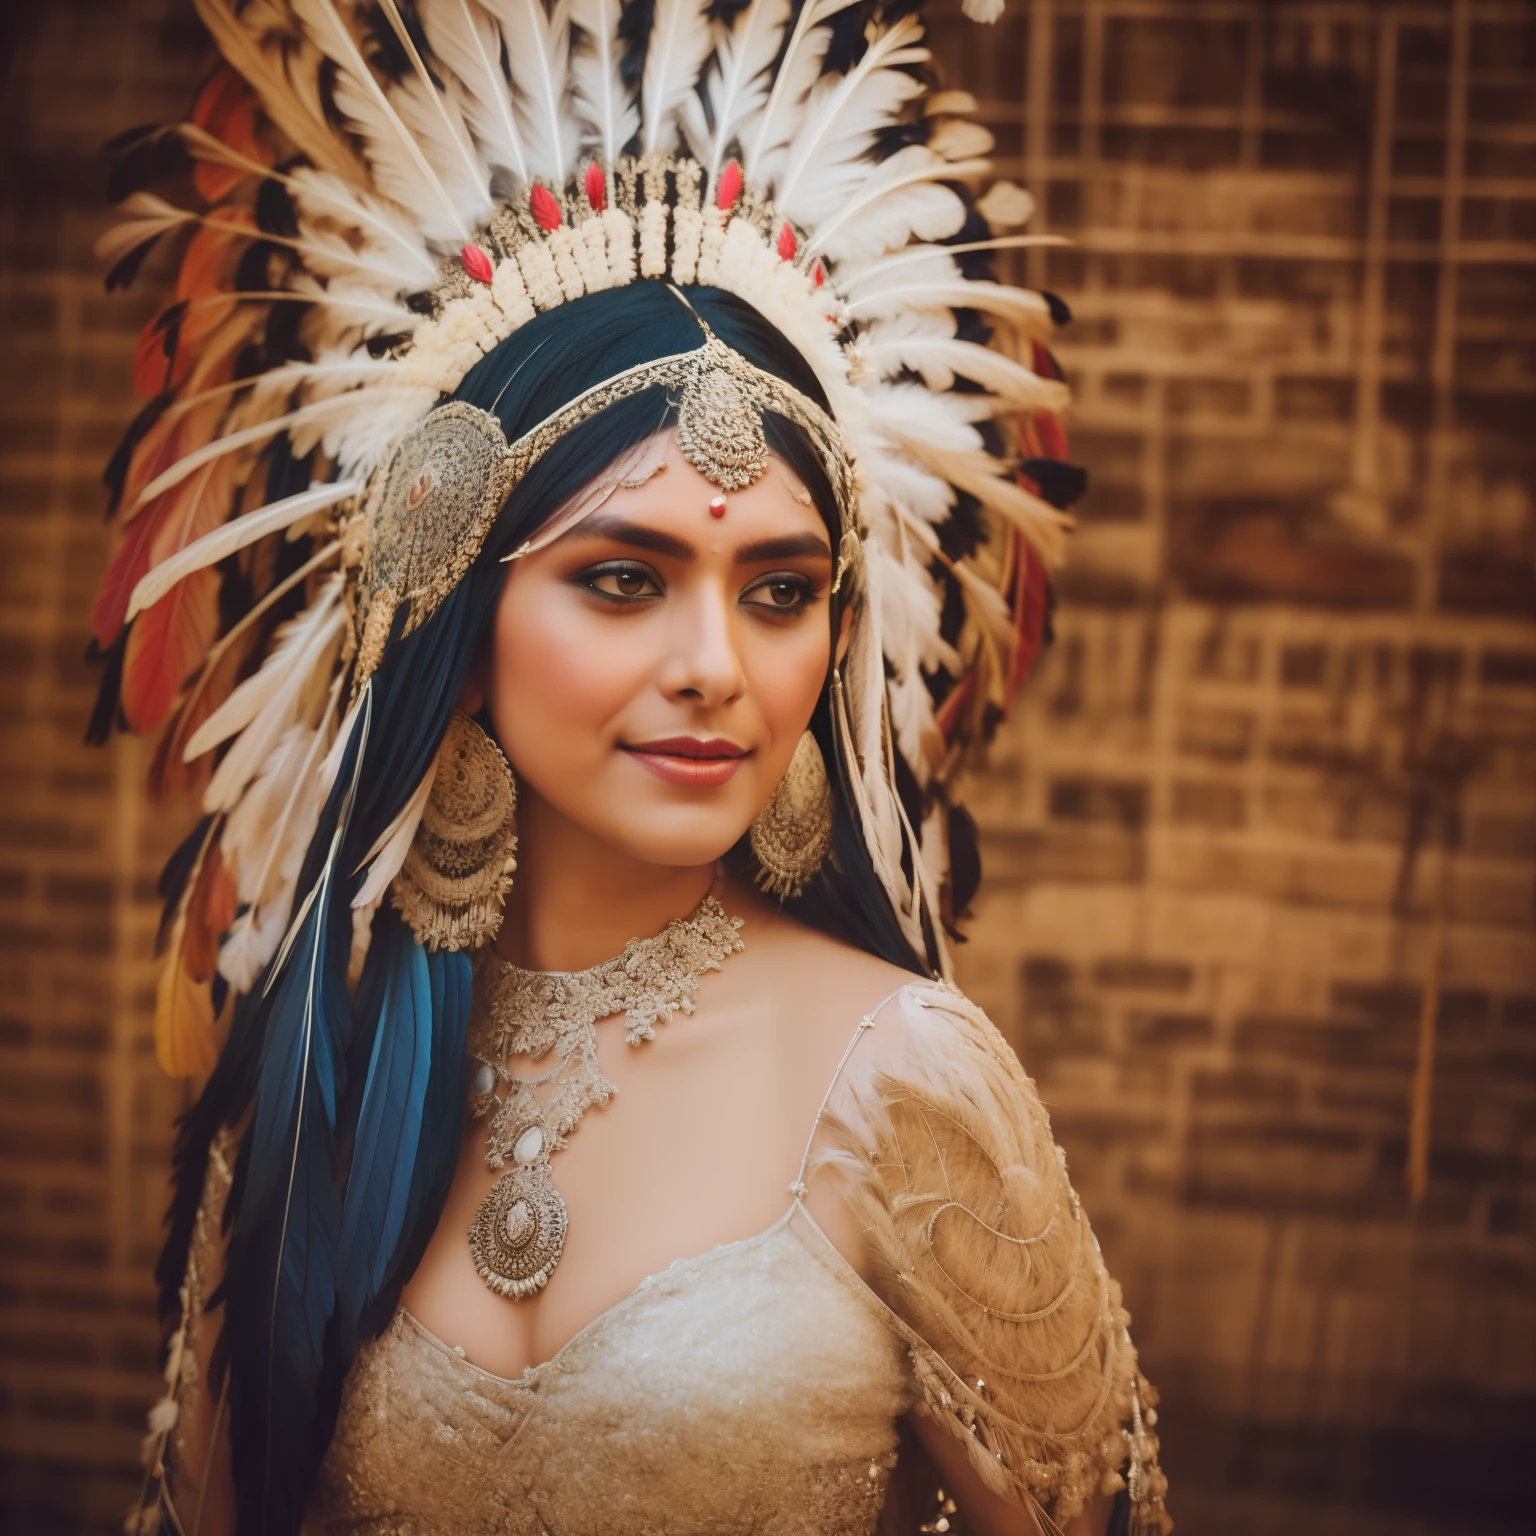 (姆魯納爾特) wearing a feather 頭飾 and a feather mask, 她穿著薩滿服, 精緻的服裝, feathered 頭飾, 頭飾, ornate 頭飾, centered 頭飾, 美洲原住民, 阿茲特克公主肖像, 漂亮的服裝, 印度武士, 美洲原住民 warrior, american indian 頭飾, : 美洲原住民 shamen fantasy, 戴著鮮豔羽毛的王冠